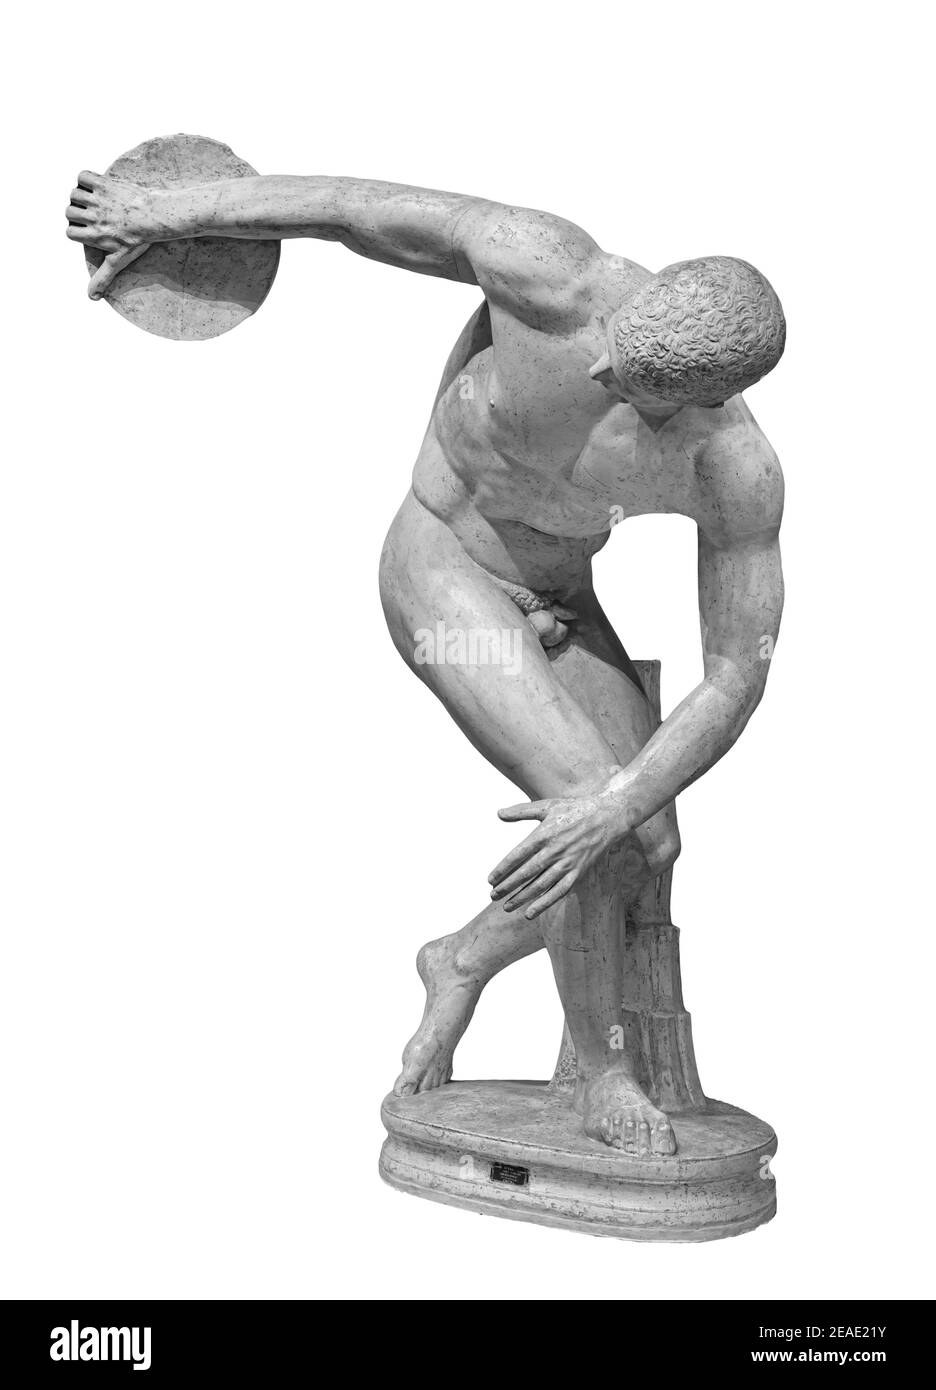 Discus thrameur discobolus une partie des Jeux Olympiques anciens. Une copie romaine de l'original grec de bronze perdu. Isolé sur blanc Banque D'Images